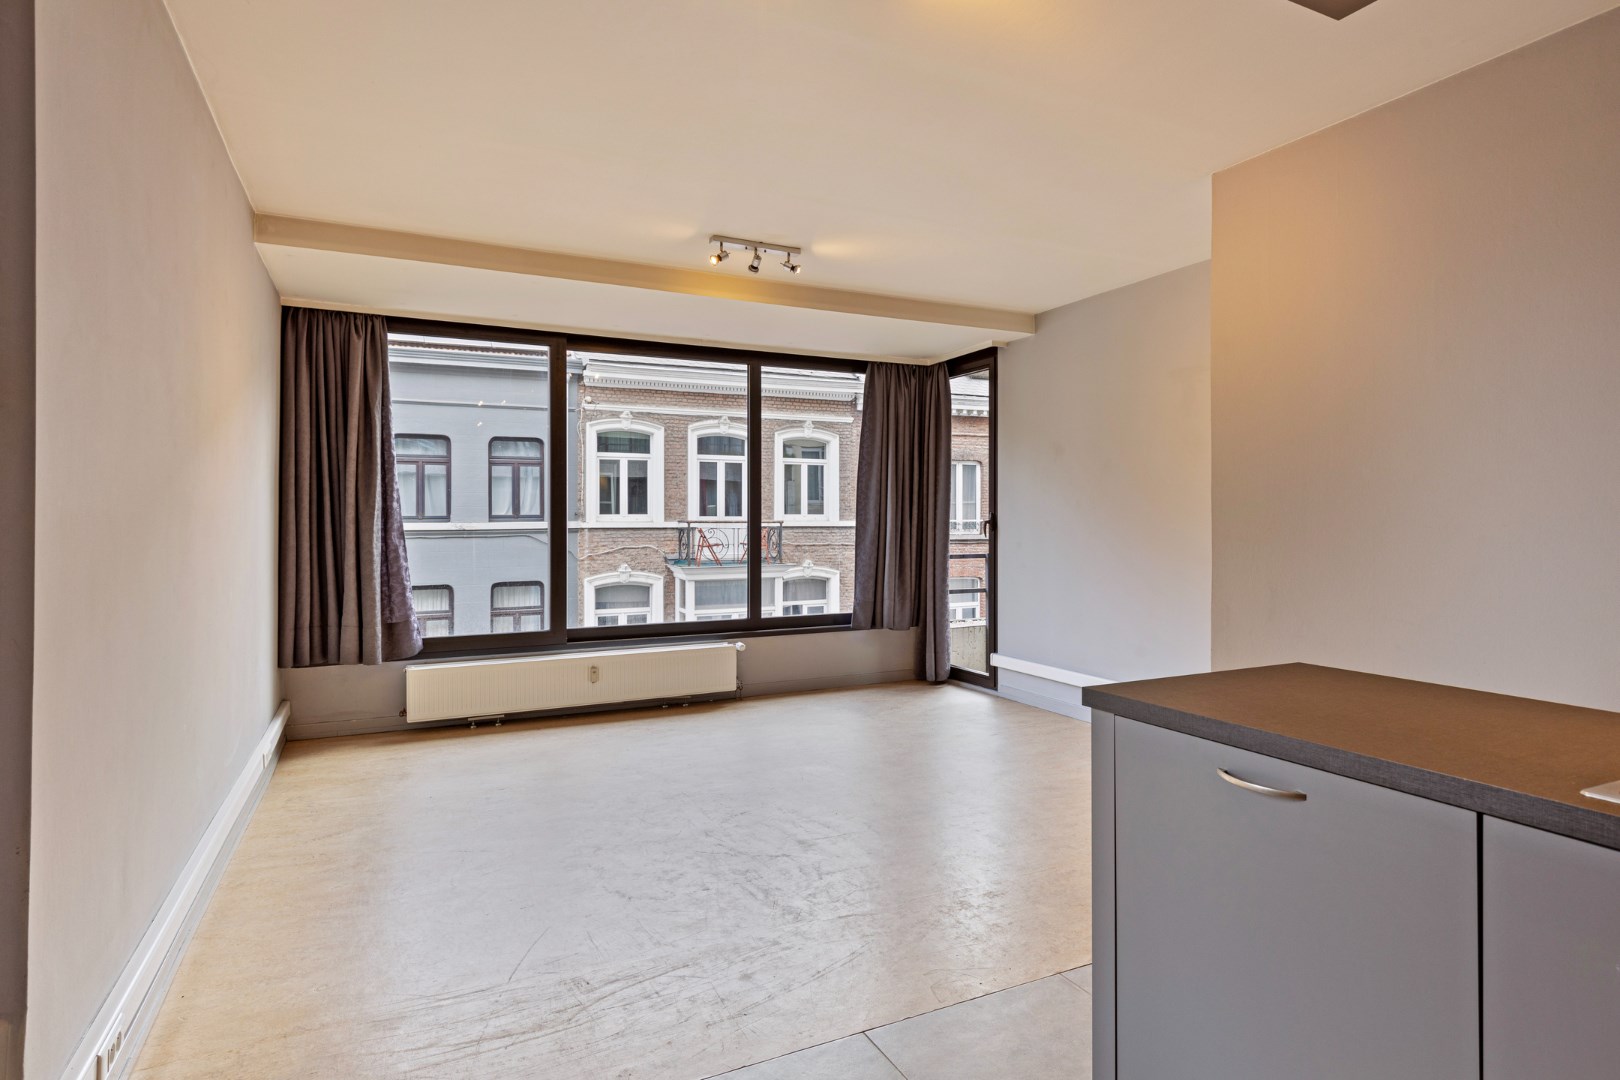 Uitstekend gelegen appartement in Leuven - bewoonbare opp. 63 m² - EPC 271 kWh/m² foto 5